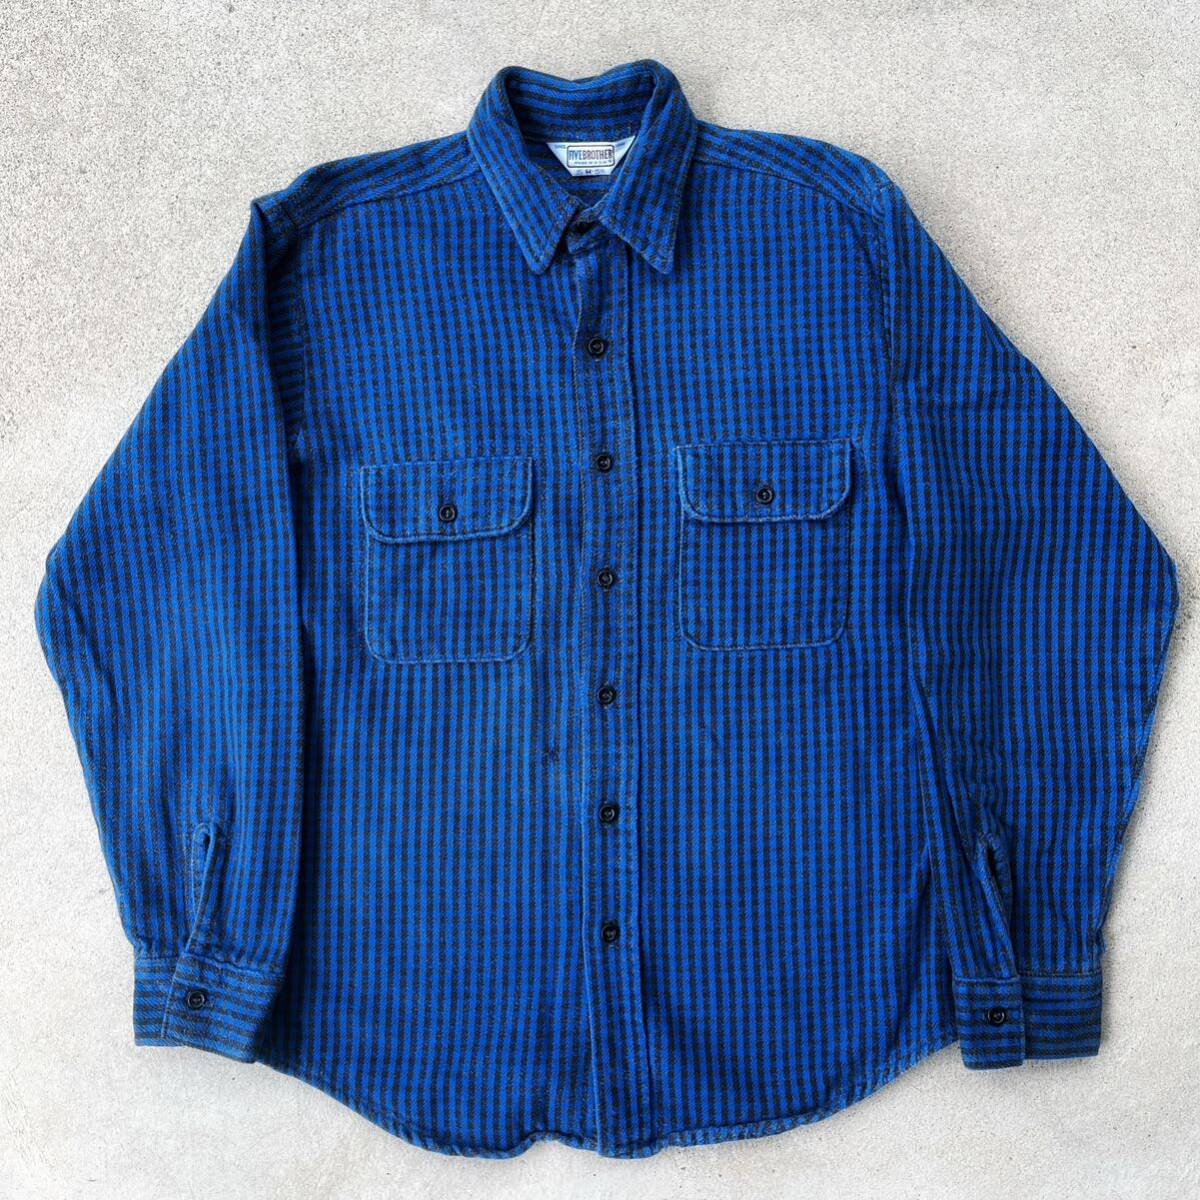 希少カラー 70s fivebrother ギンガムチェック ネルシャツVintage FIVE BROTHER flannel shirts M usa製 ビンテージ ファイブブラザーの画像1